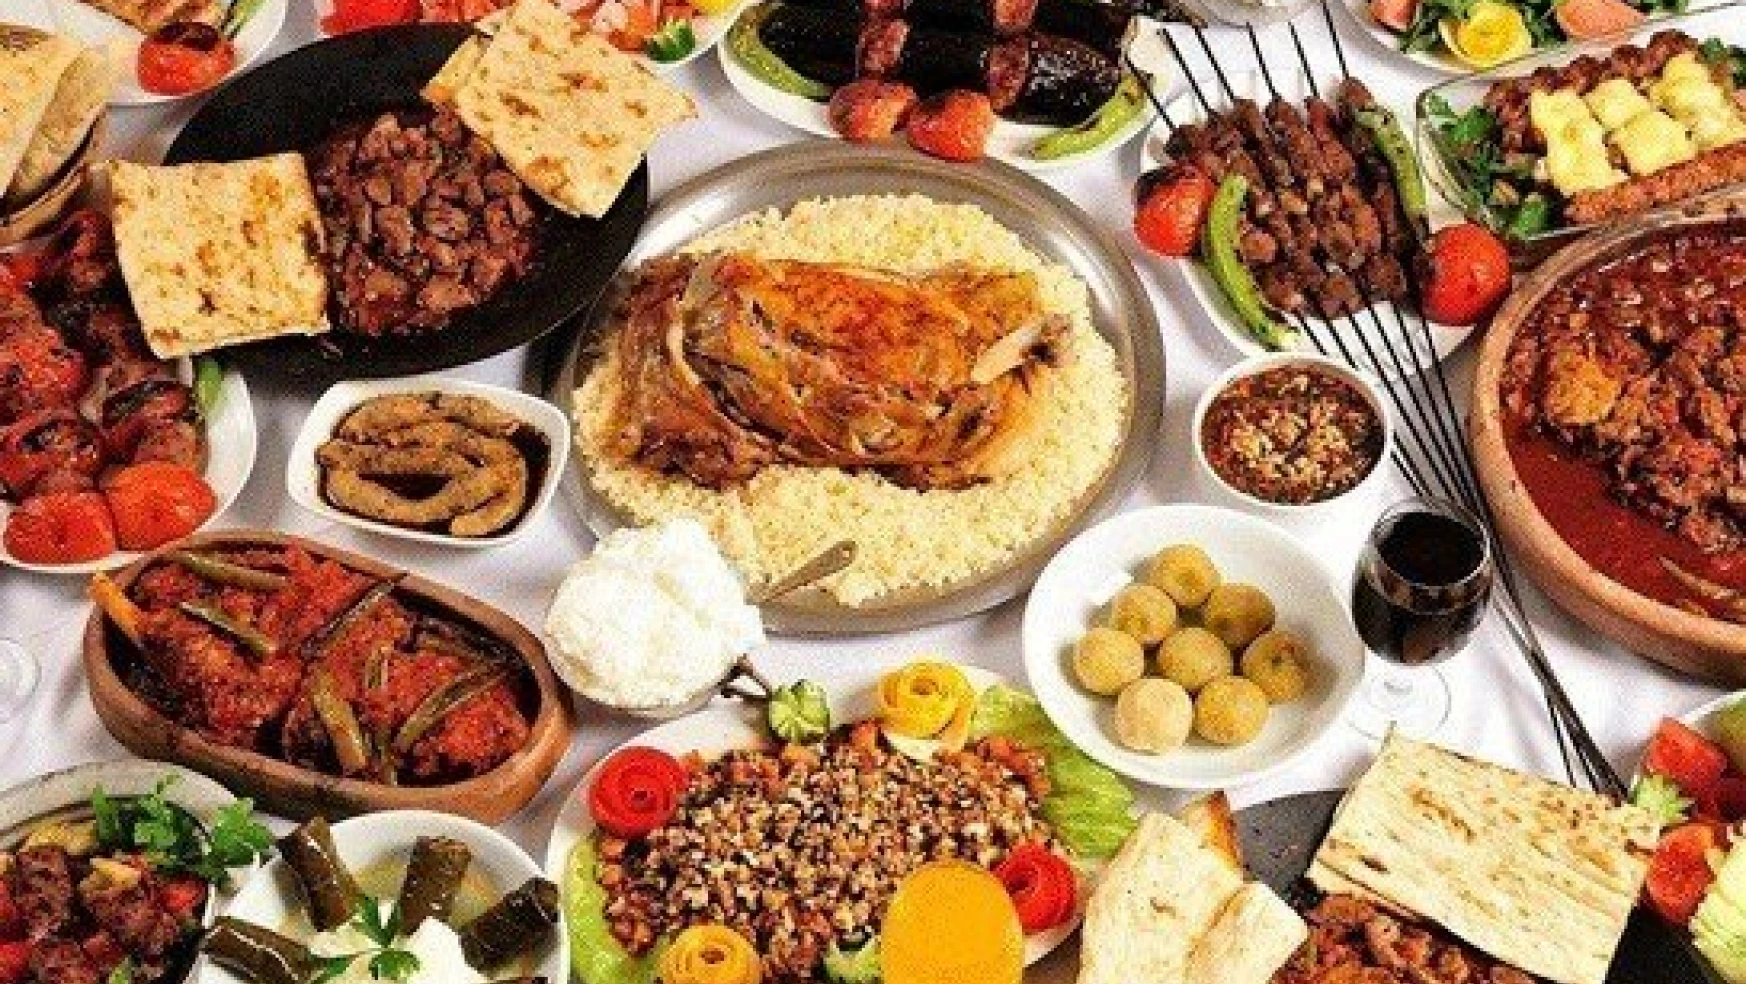 Yöresel yemekler ramazan sofralarına lezzet katıyor
